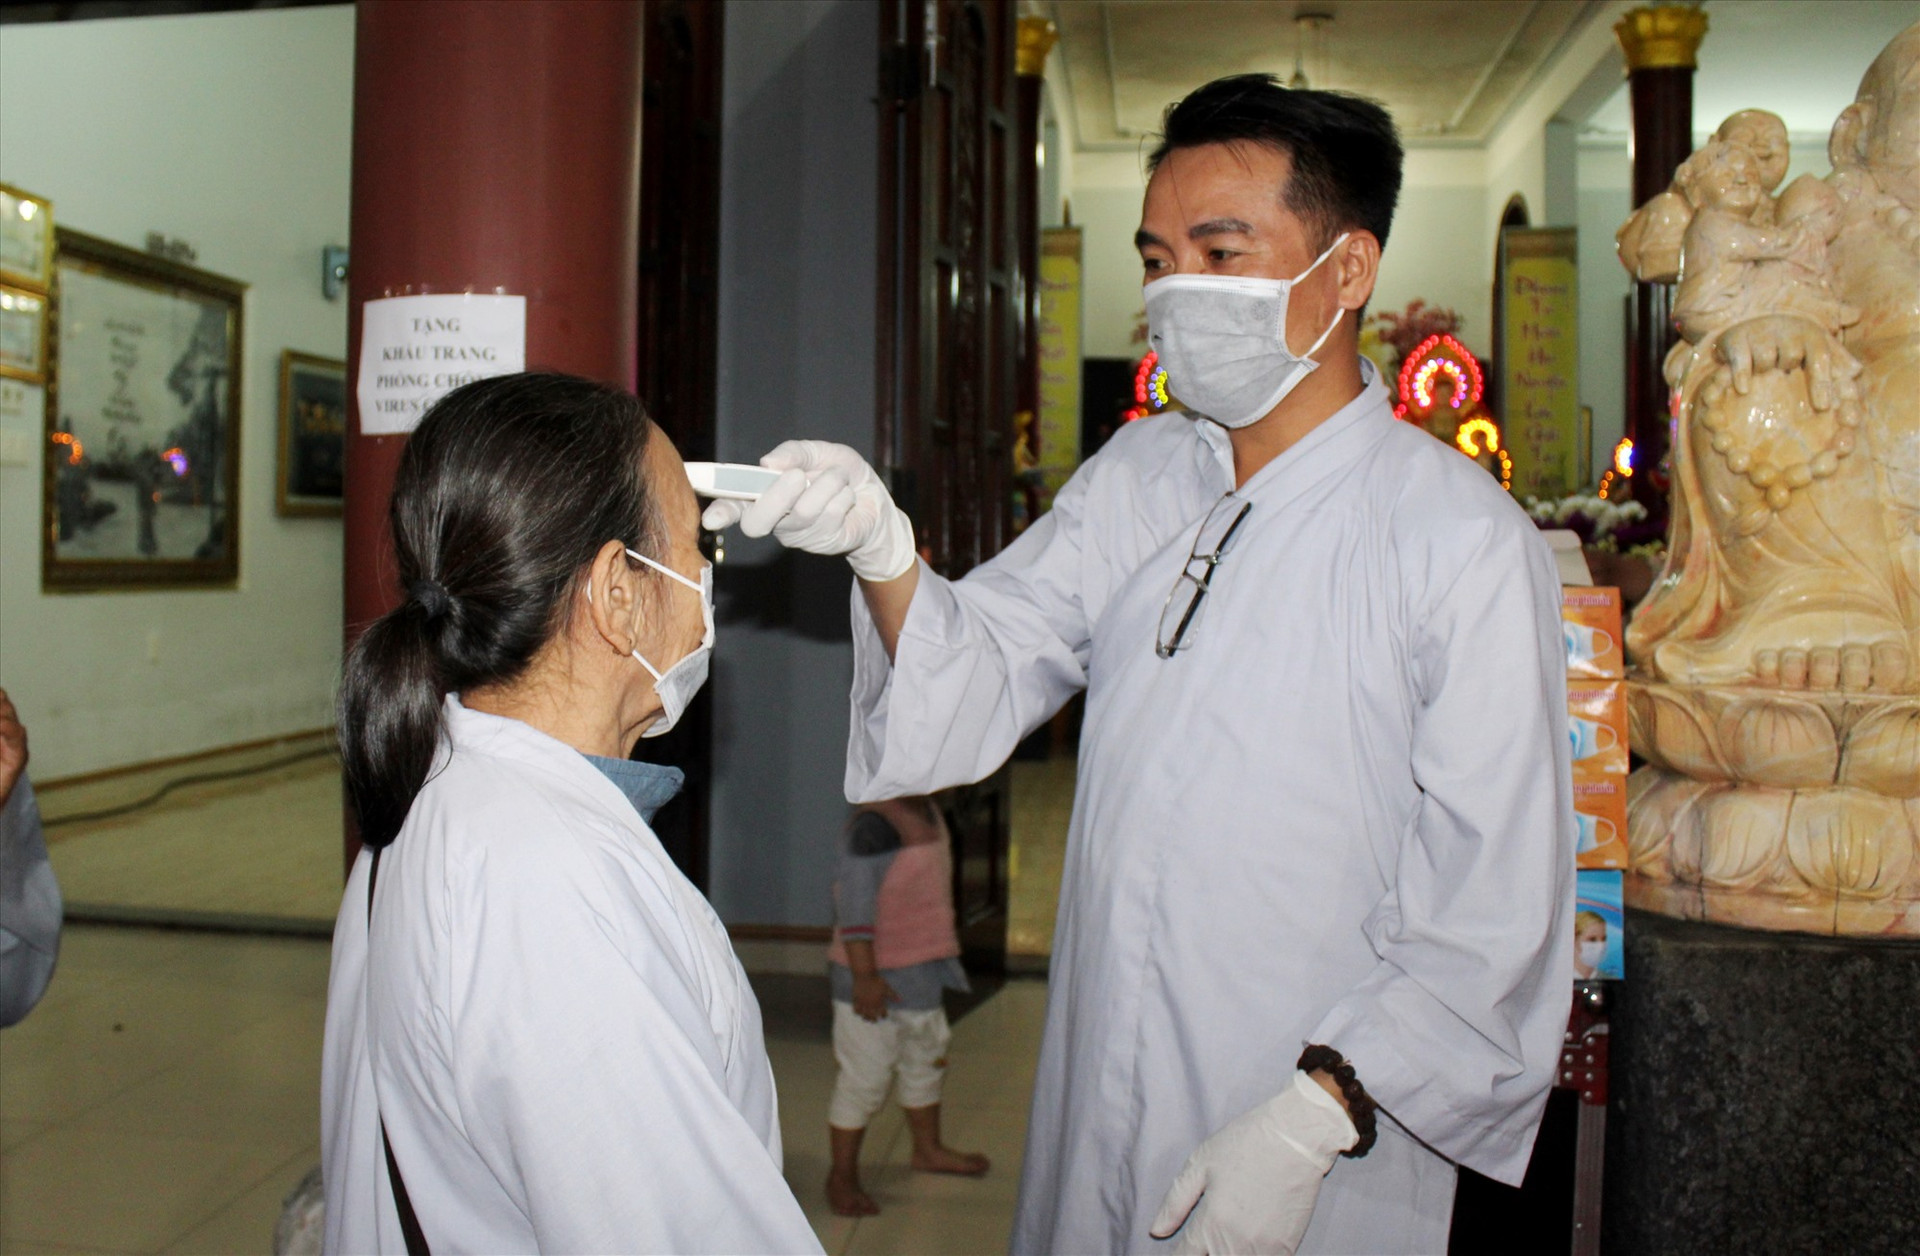 Công tác phòng chống dịch Covid-19 được nhà chùa Linh Bửu (xã Tam Thăng, TP. Tam Kỳ) thực hiện nghiêm túc. Ảnh: VIÊN HẢI